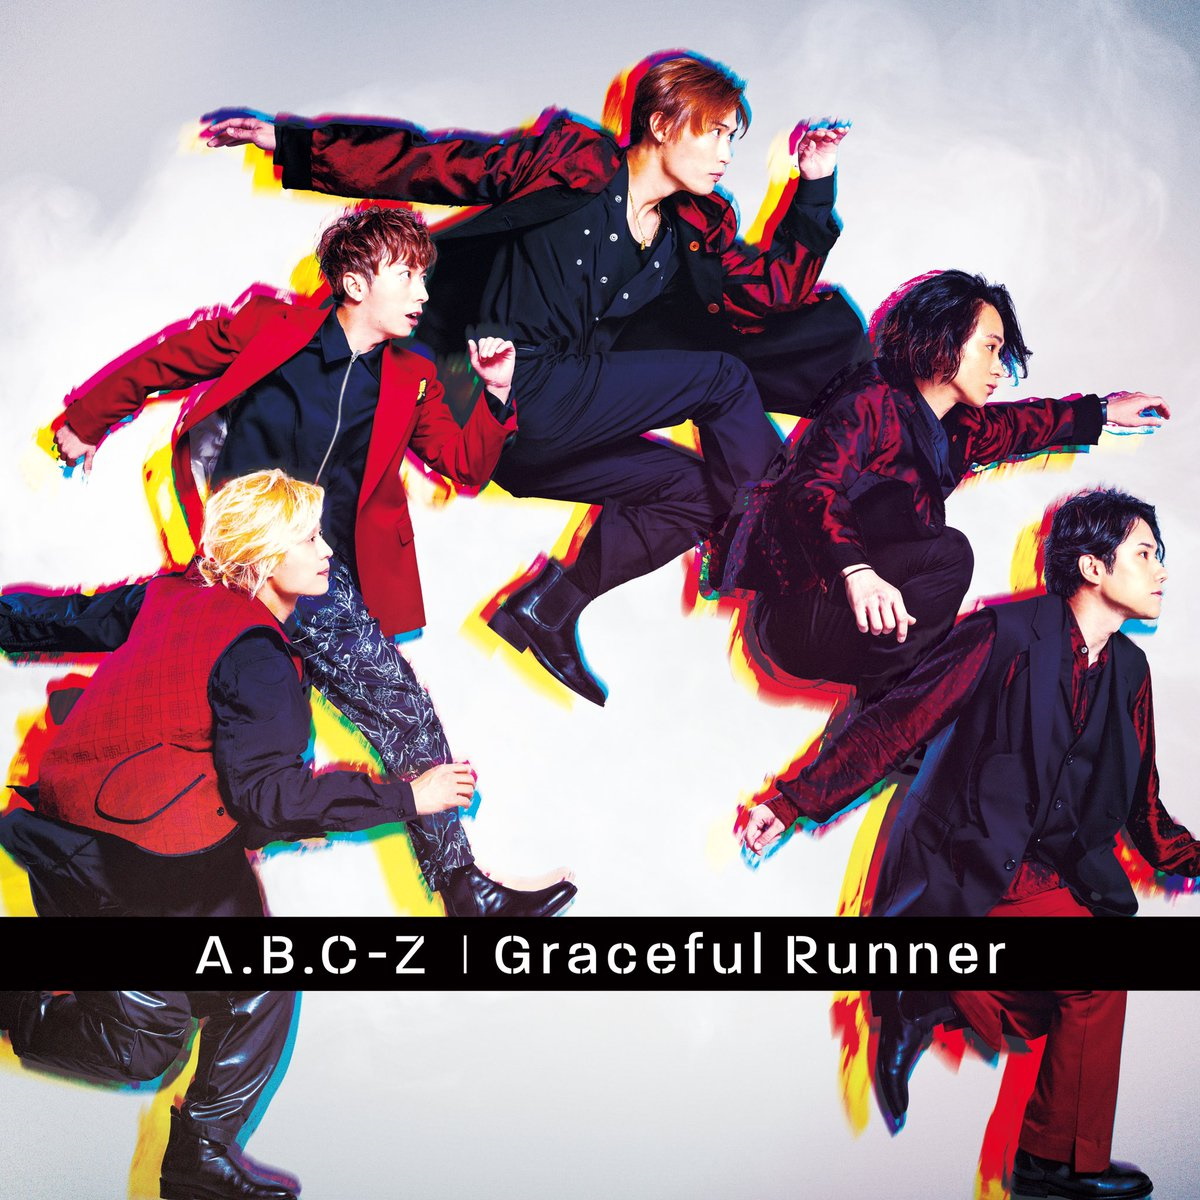 『A.B.C-Z - DANGER-DANGER』収録の『Graceful Runner』ジャケット